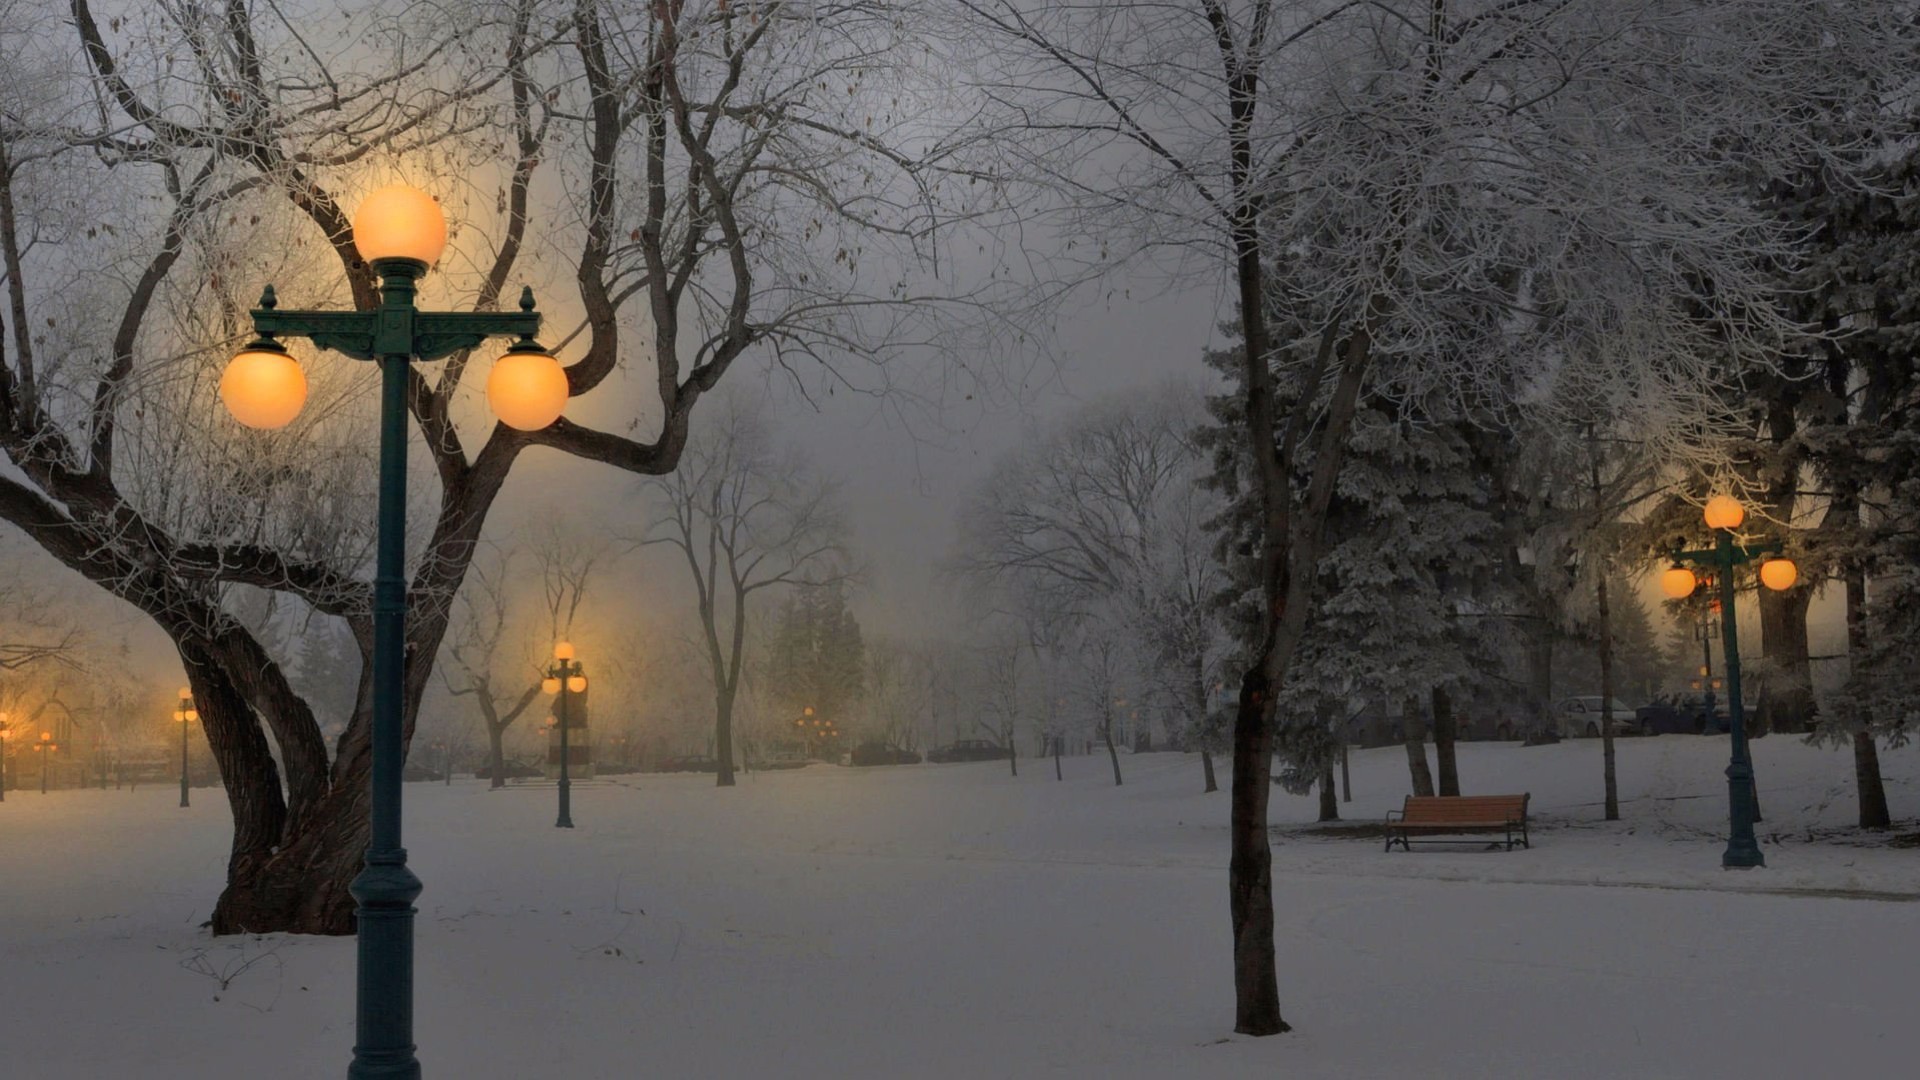 Скачать обои бесплатно Зима, Ночь, Снег, Парк, Дерево, Скамья, Фотографии, Легкий картинка на рабочий стол ПК